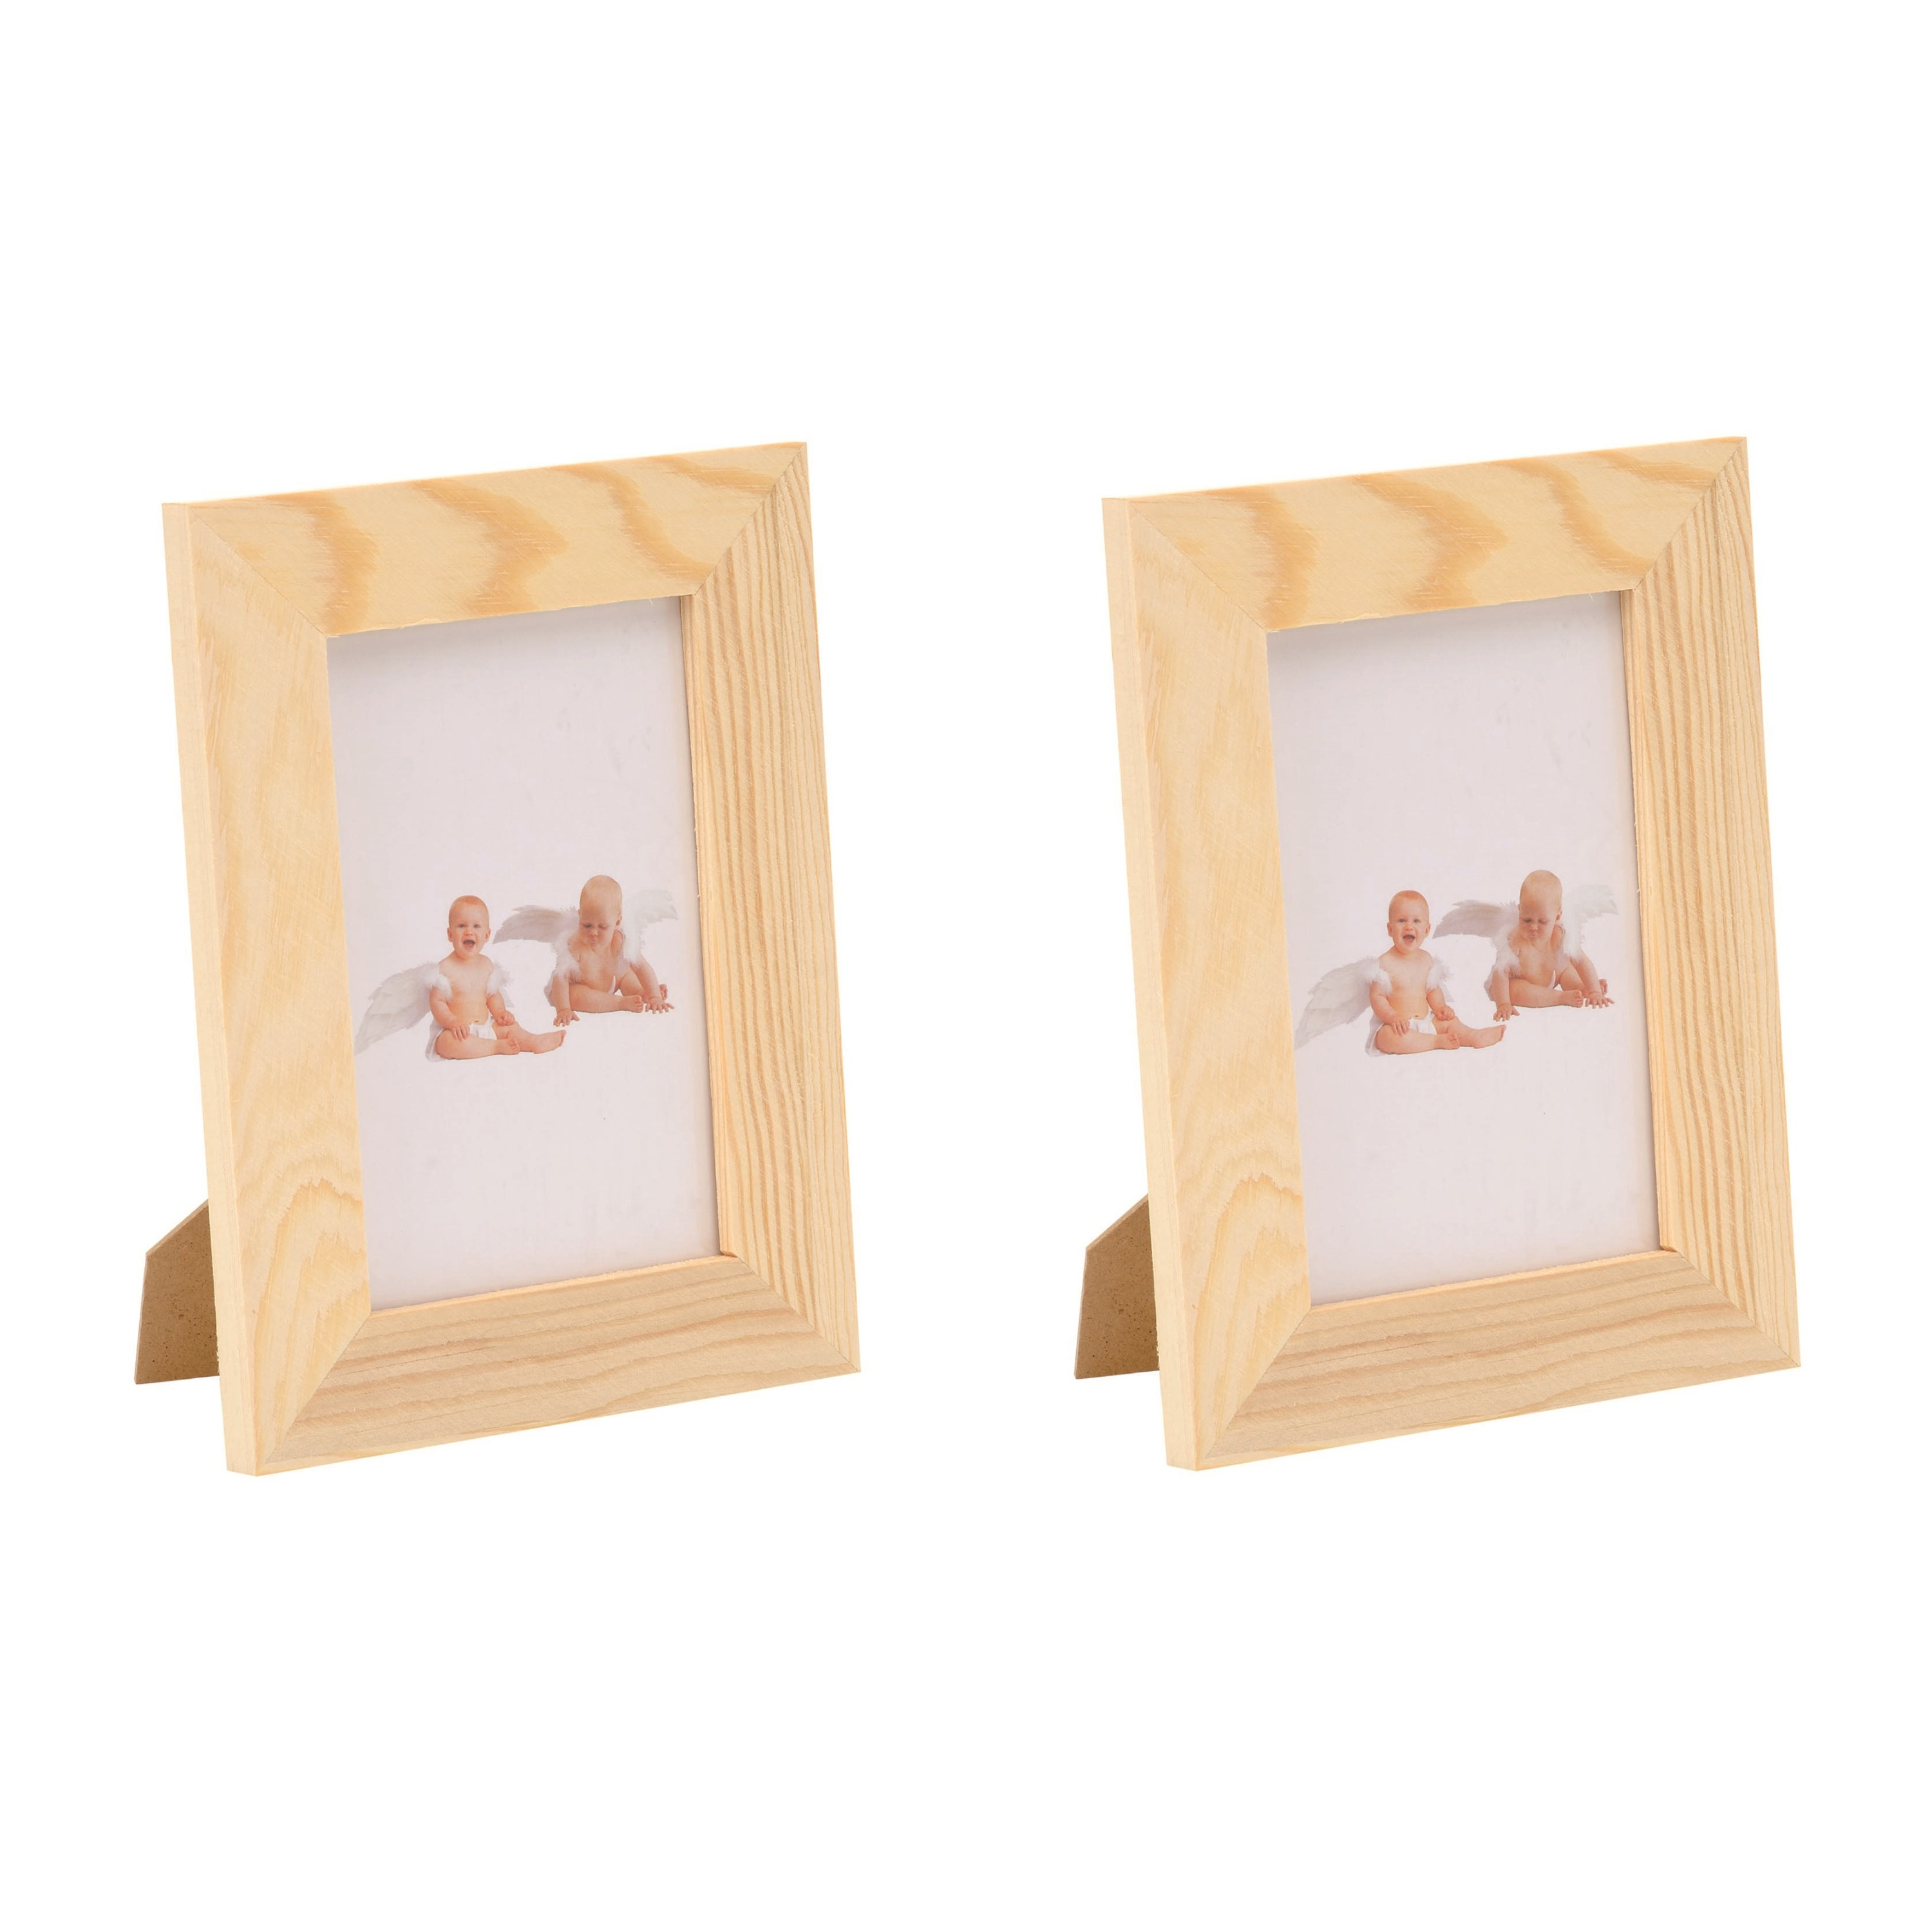 3x stuks houten fotolijsten-fotolijstjes 14.5 x 19.5 cm DIY hobby-knutselmateriaal